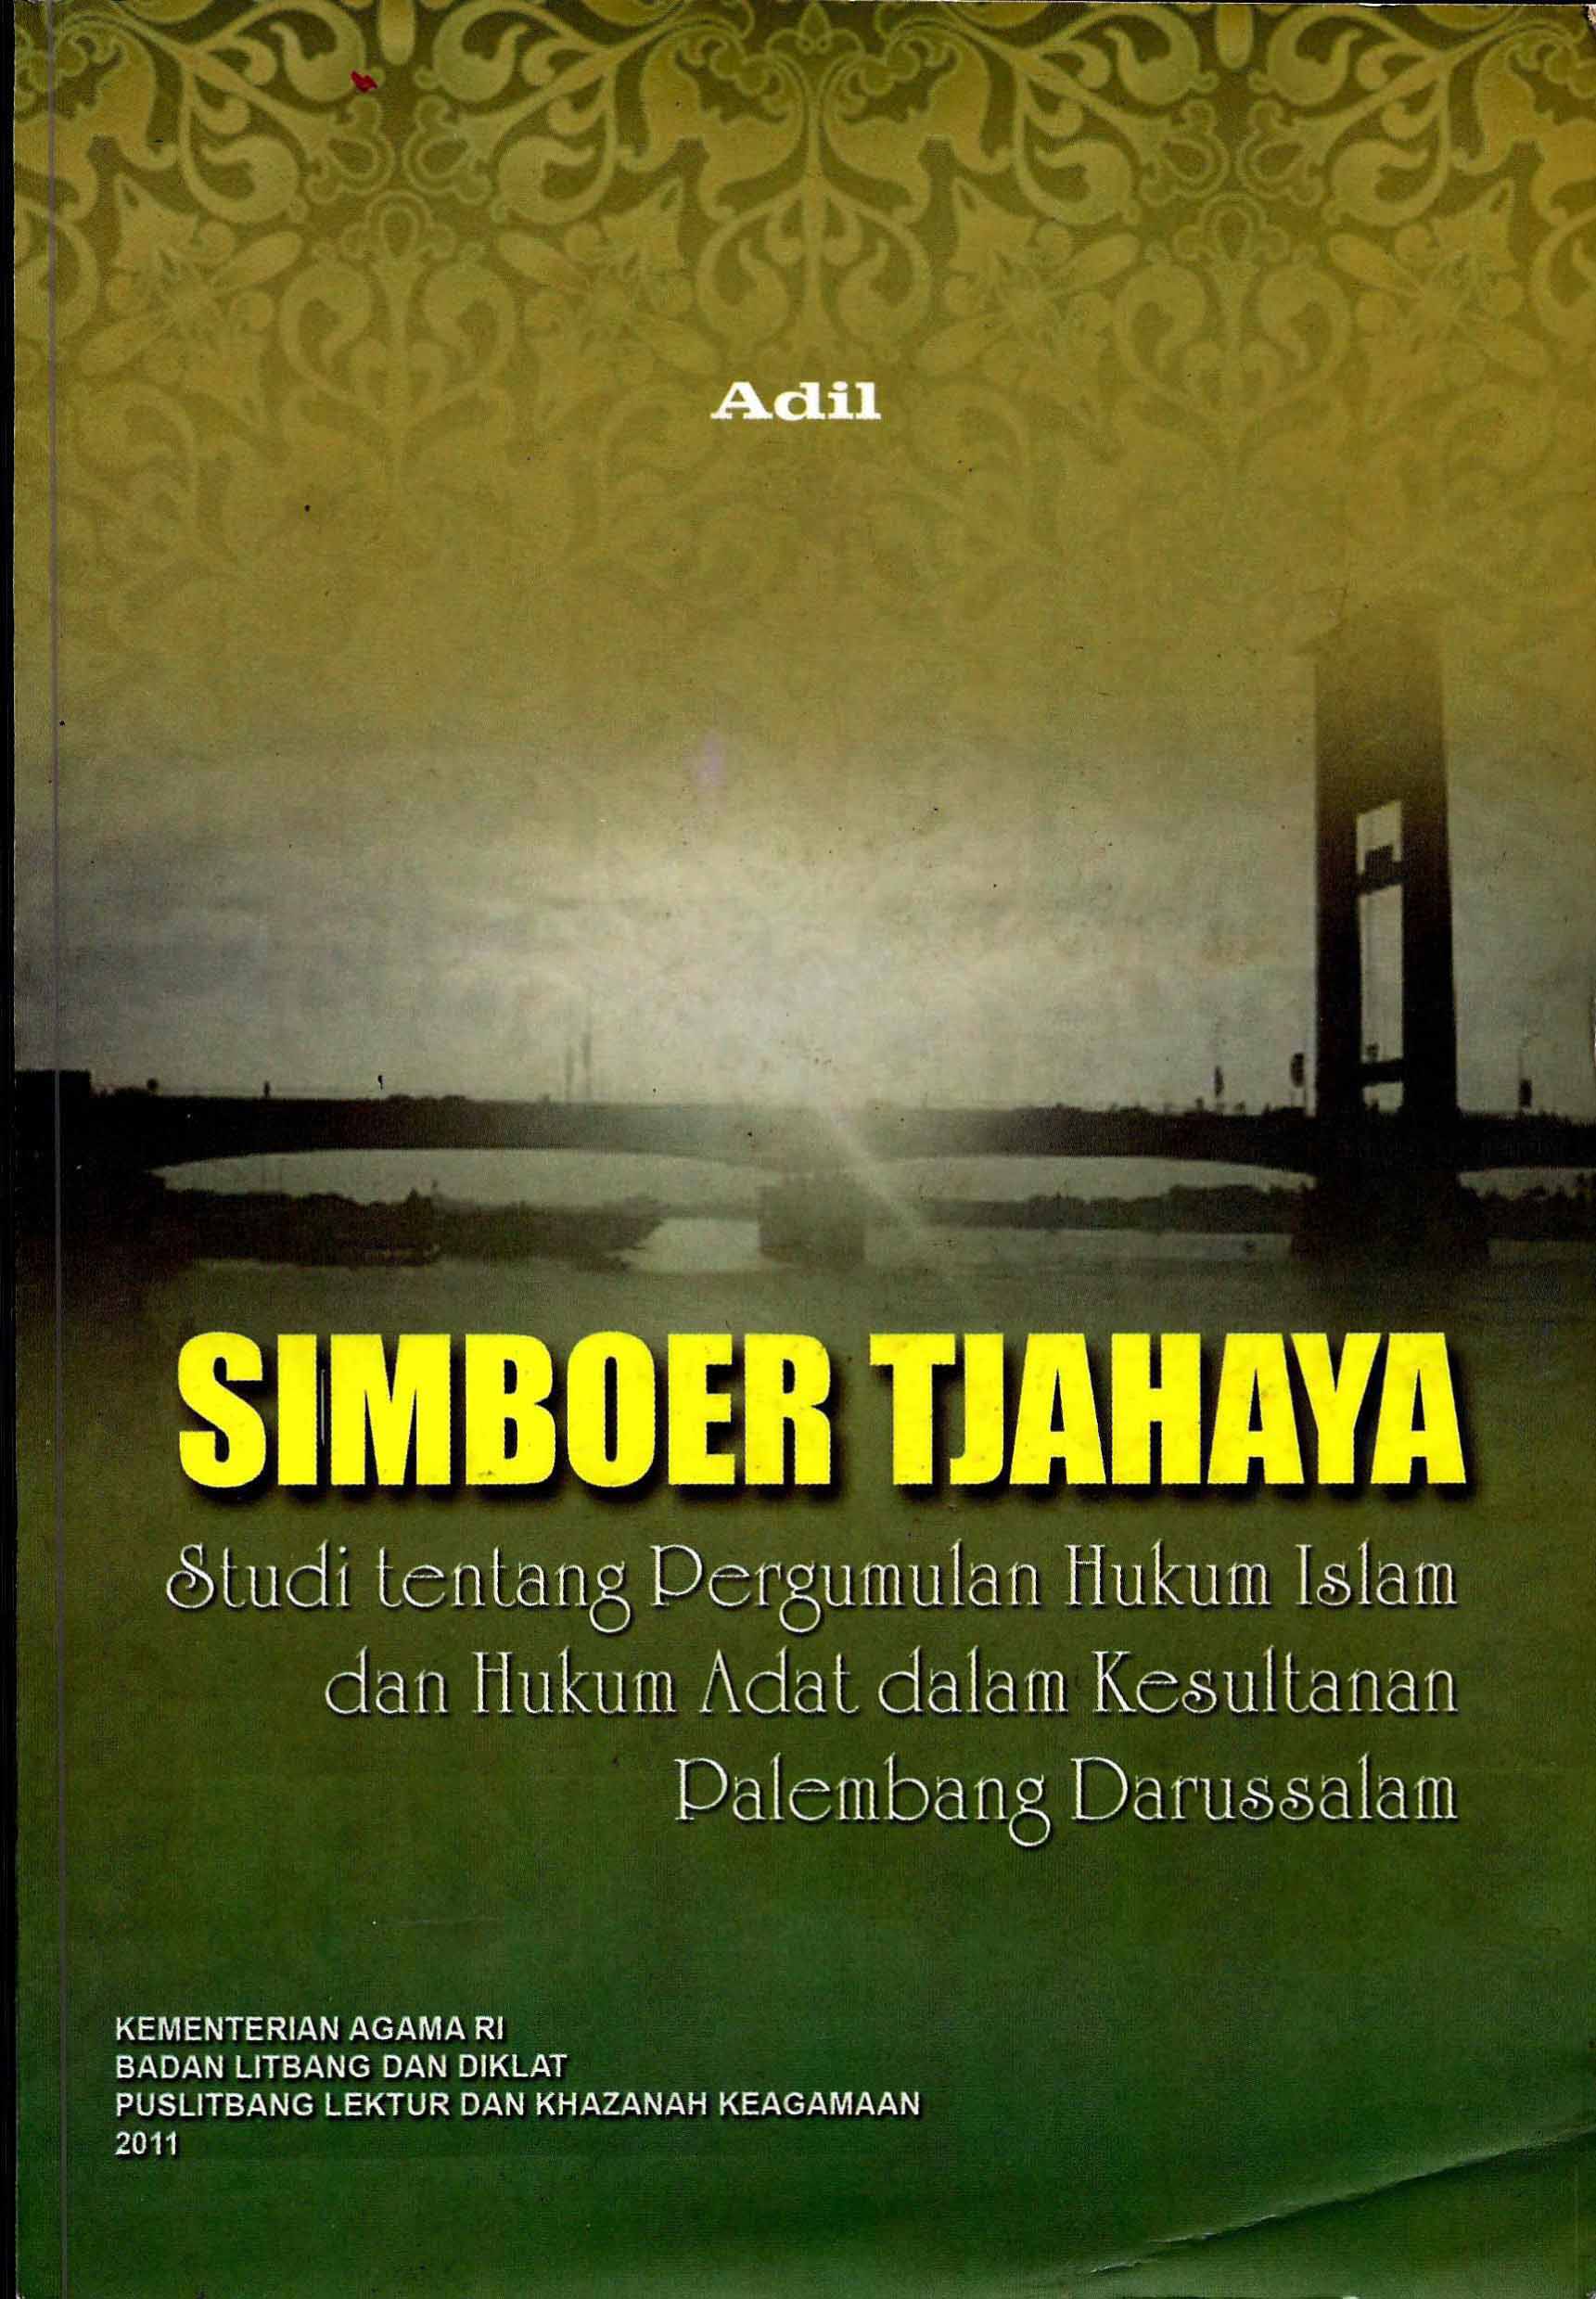 Simboer Tjahaya (Studi tentang Pergumulan Hukum Islam dan Hukum Adat dalam Kesultanan Palembang Darussalam)